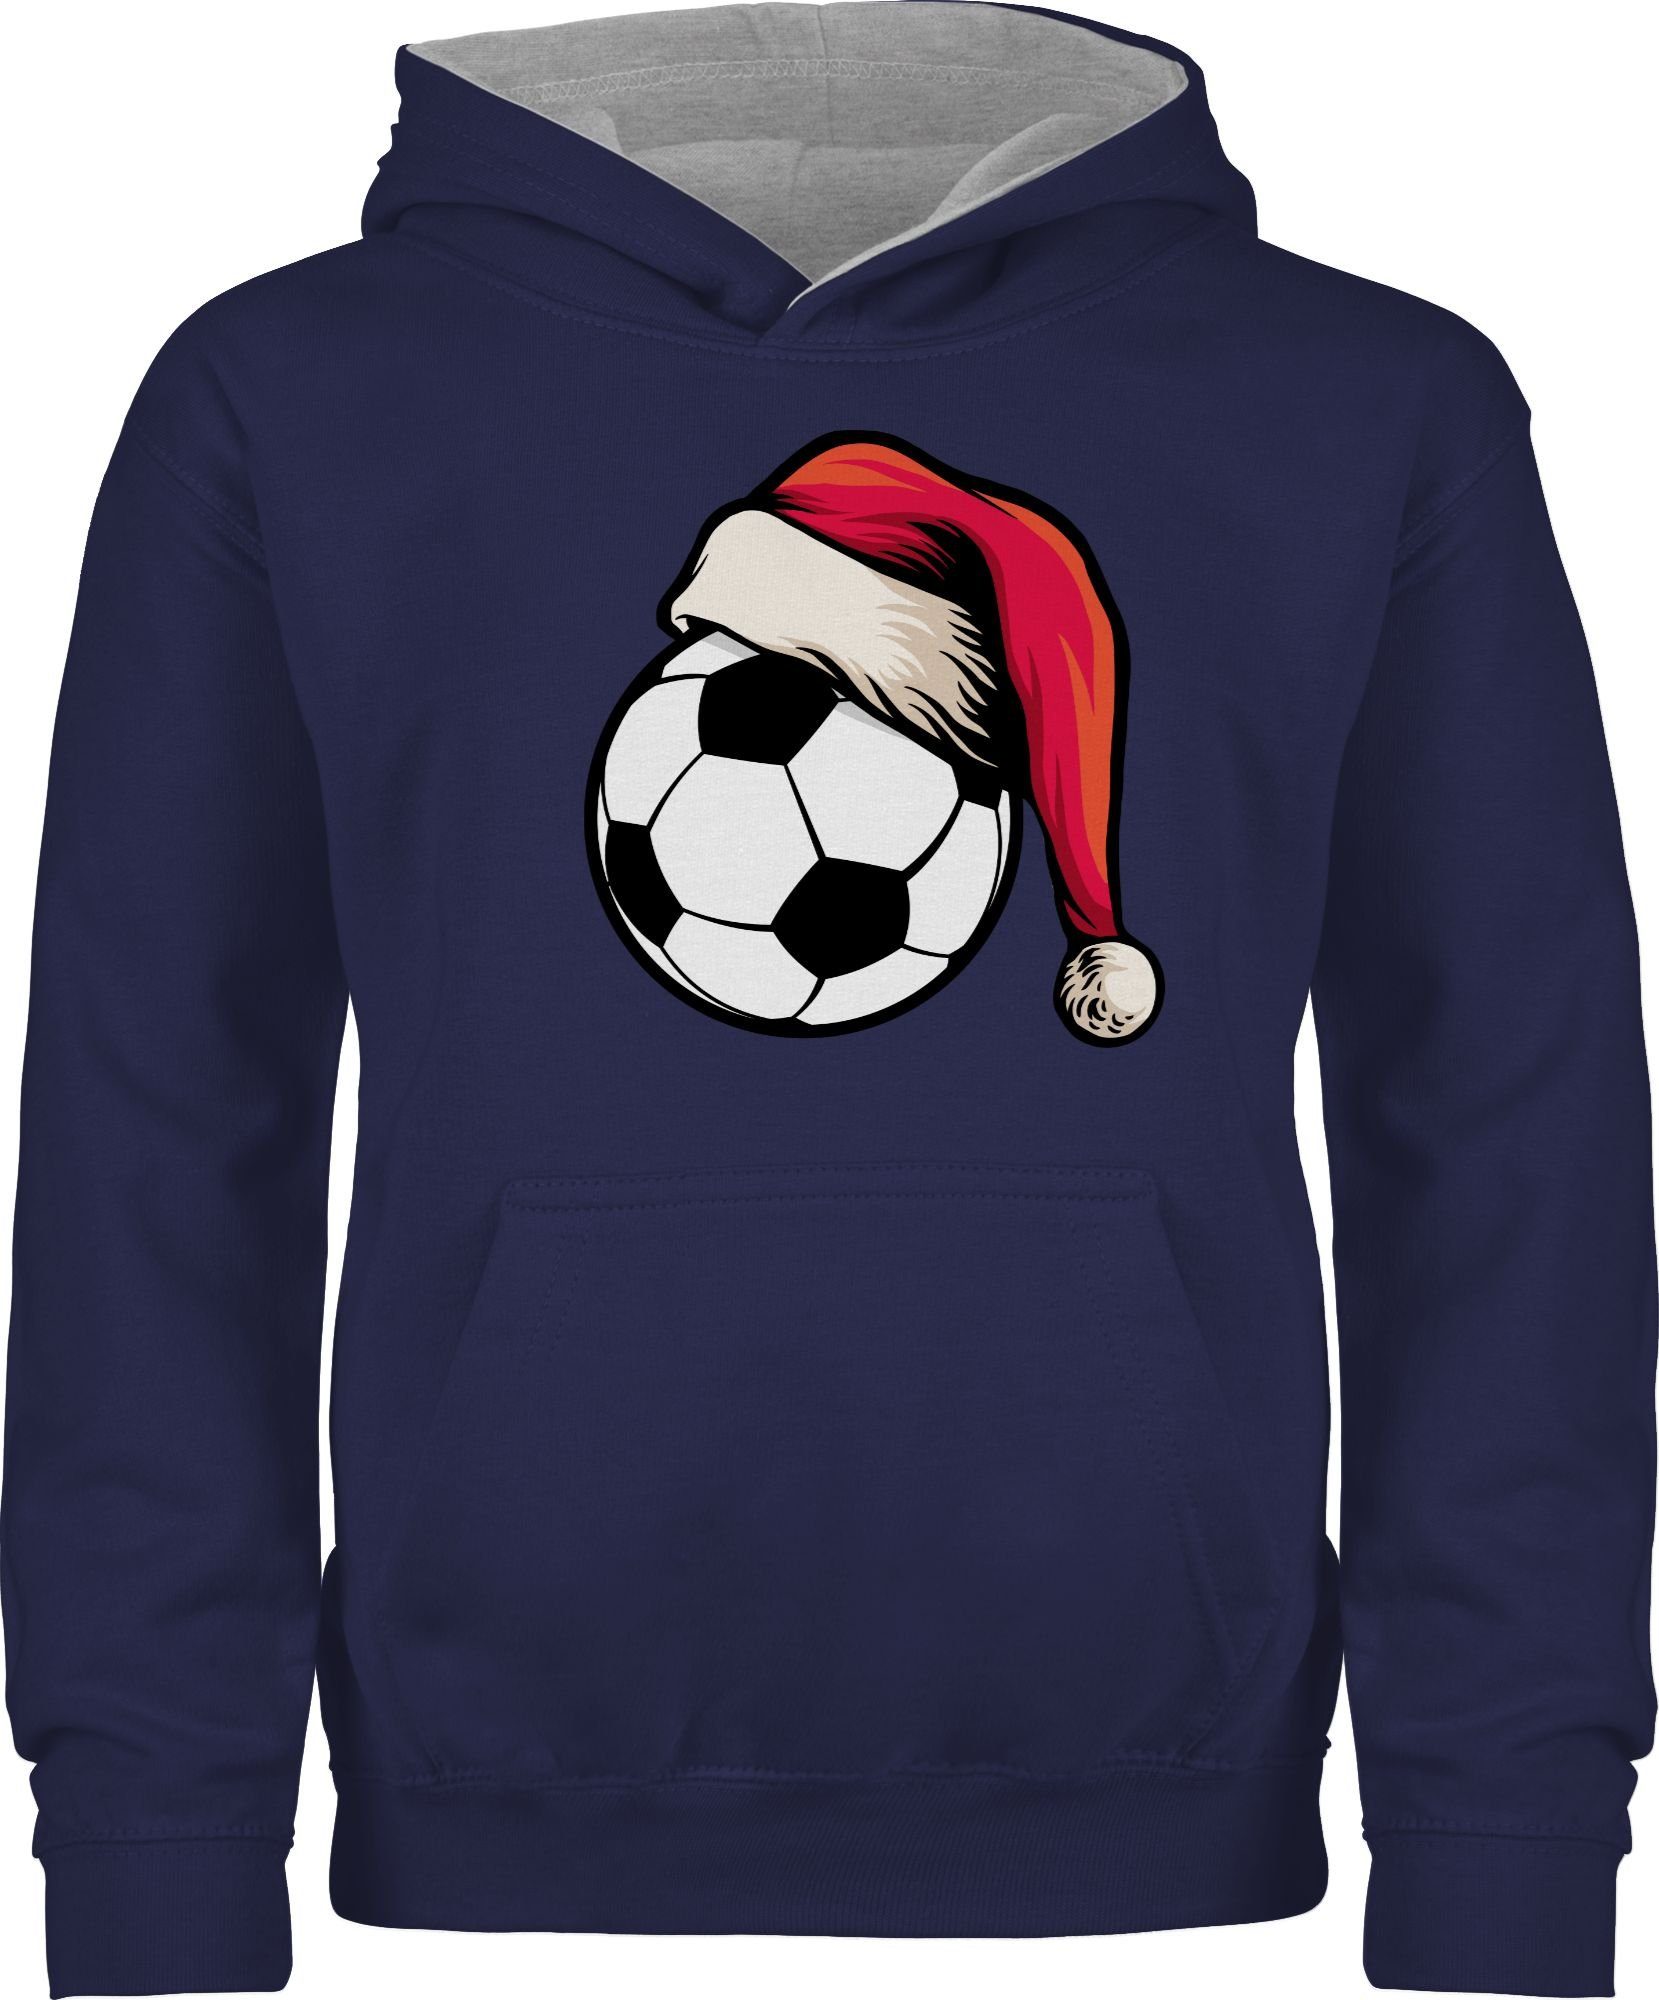 Kleidung Shirtracer Weihnachtsmütze Blau/Grau Navy Fußball meliert mit Kinder Hoodie Weihnachten 3